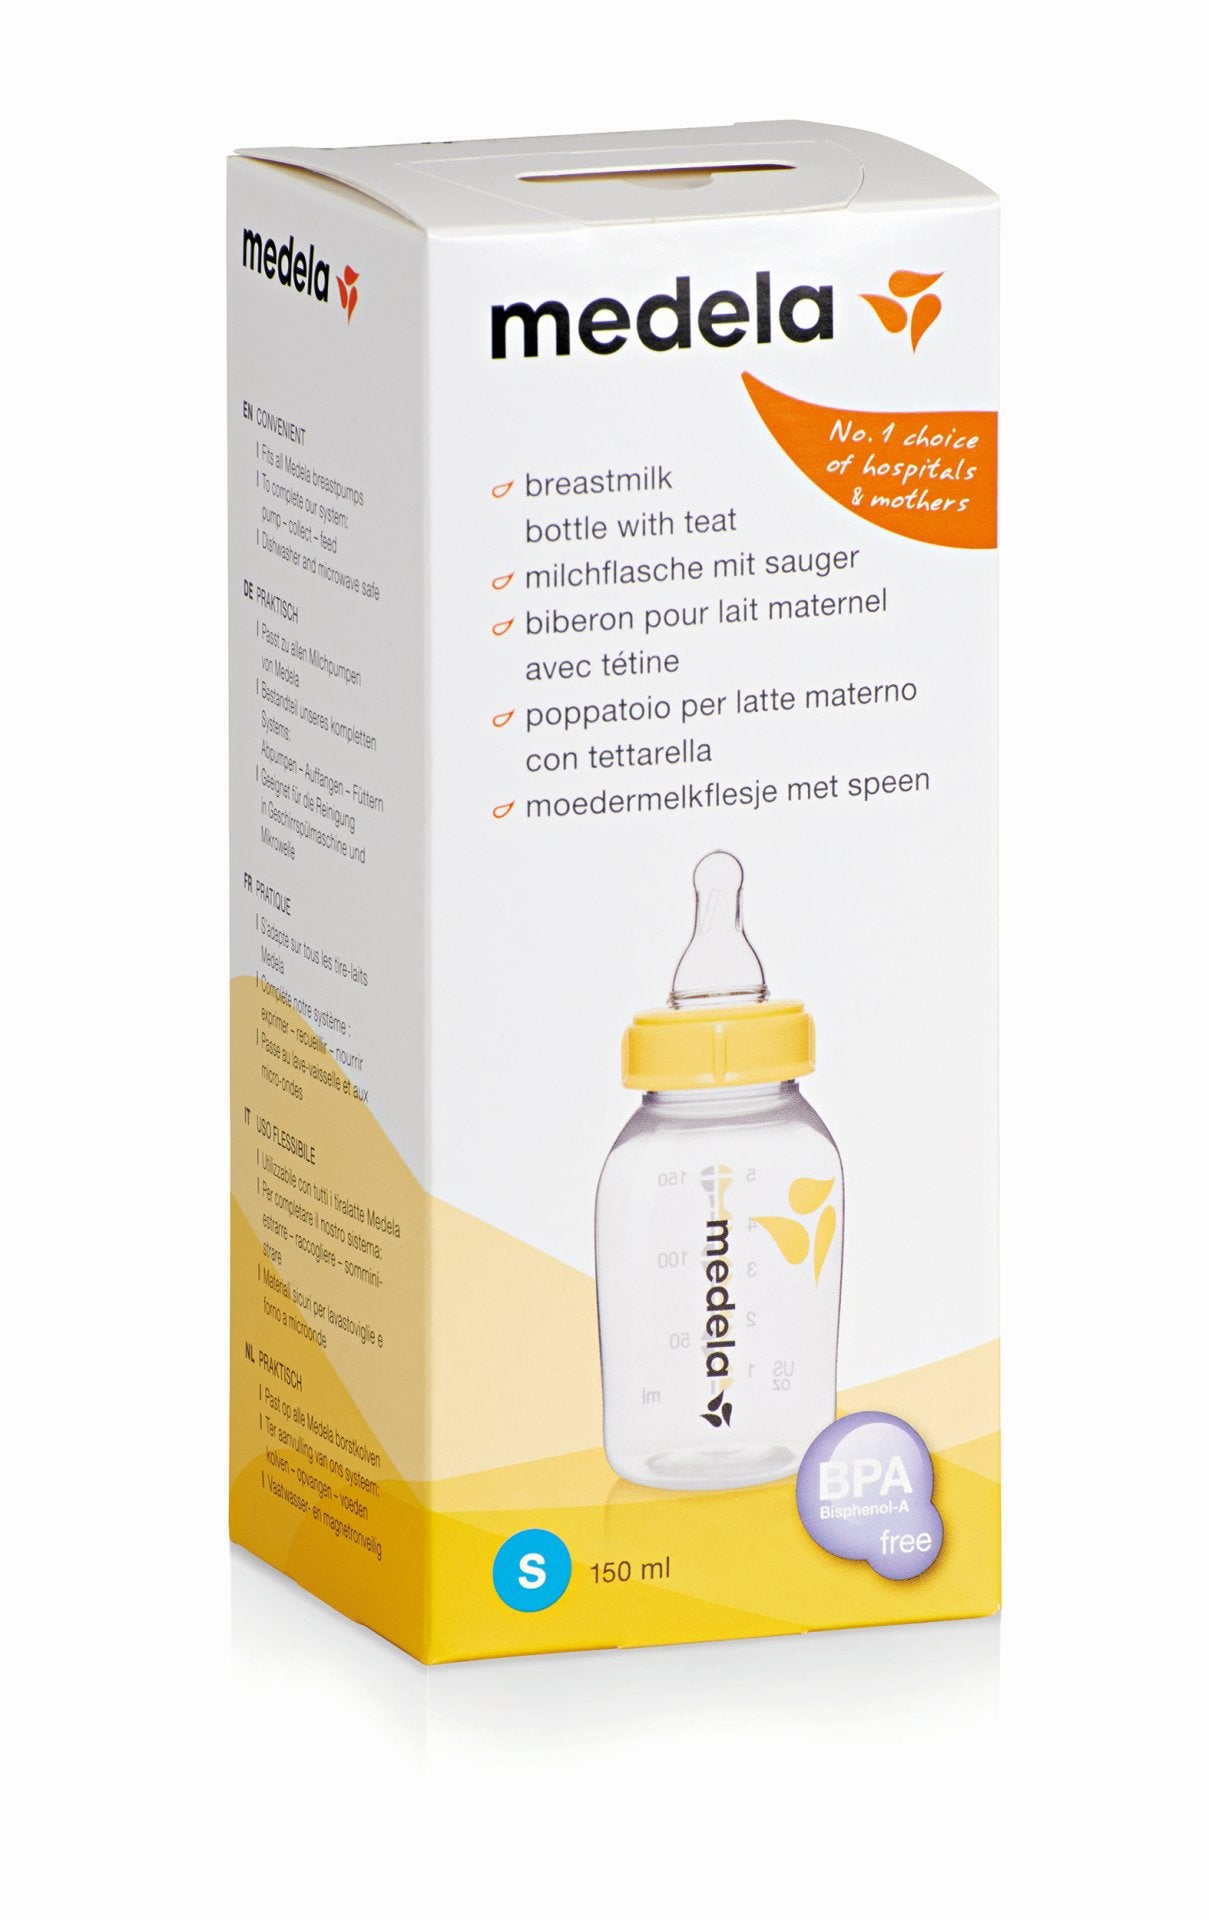 Medela Breast milk bottle with teat – cleftPharma.